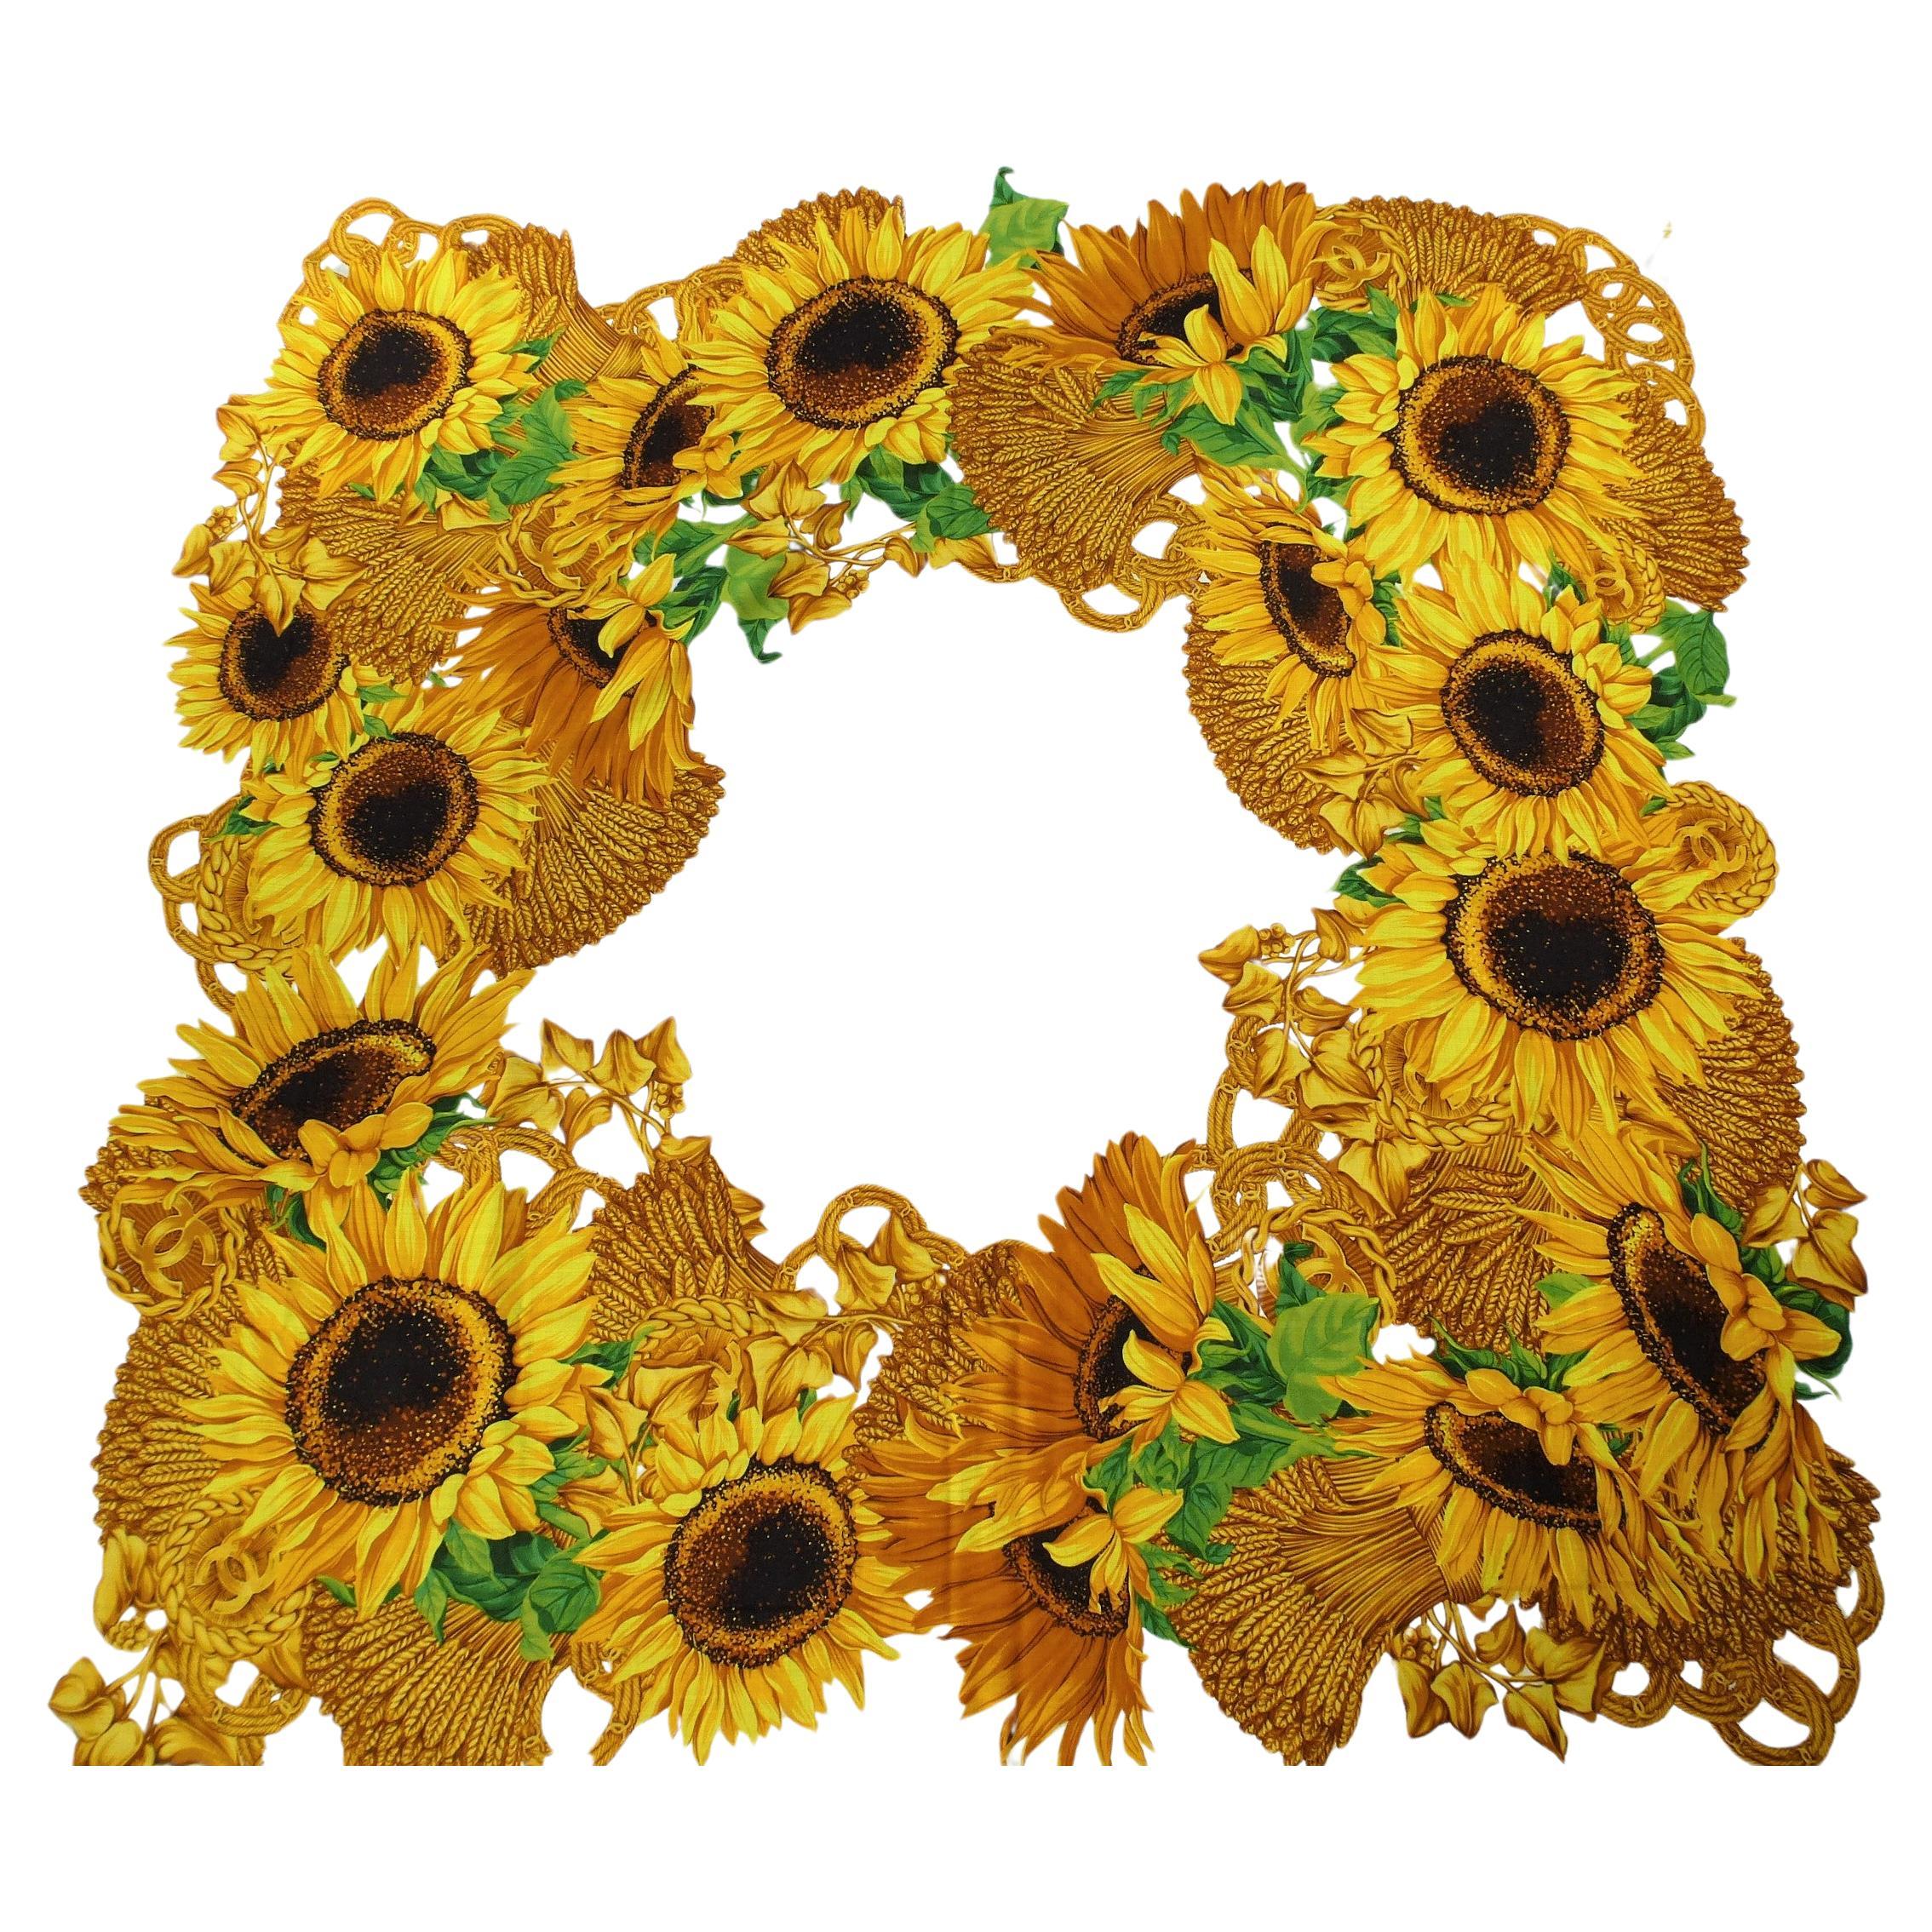 Ein feiner und dünner Chanel-Schal, gewebt aus 70 % Wolle und 30 % Seide, bedruckt mit gelben Sonnenblumen und CC. Sonnenblumen waren auch ein beliebtes Motiv für CHANEL. Das Qualitätslabel auf diesem gelben Tuch ist nicht mehr vorhanden. Es ist die